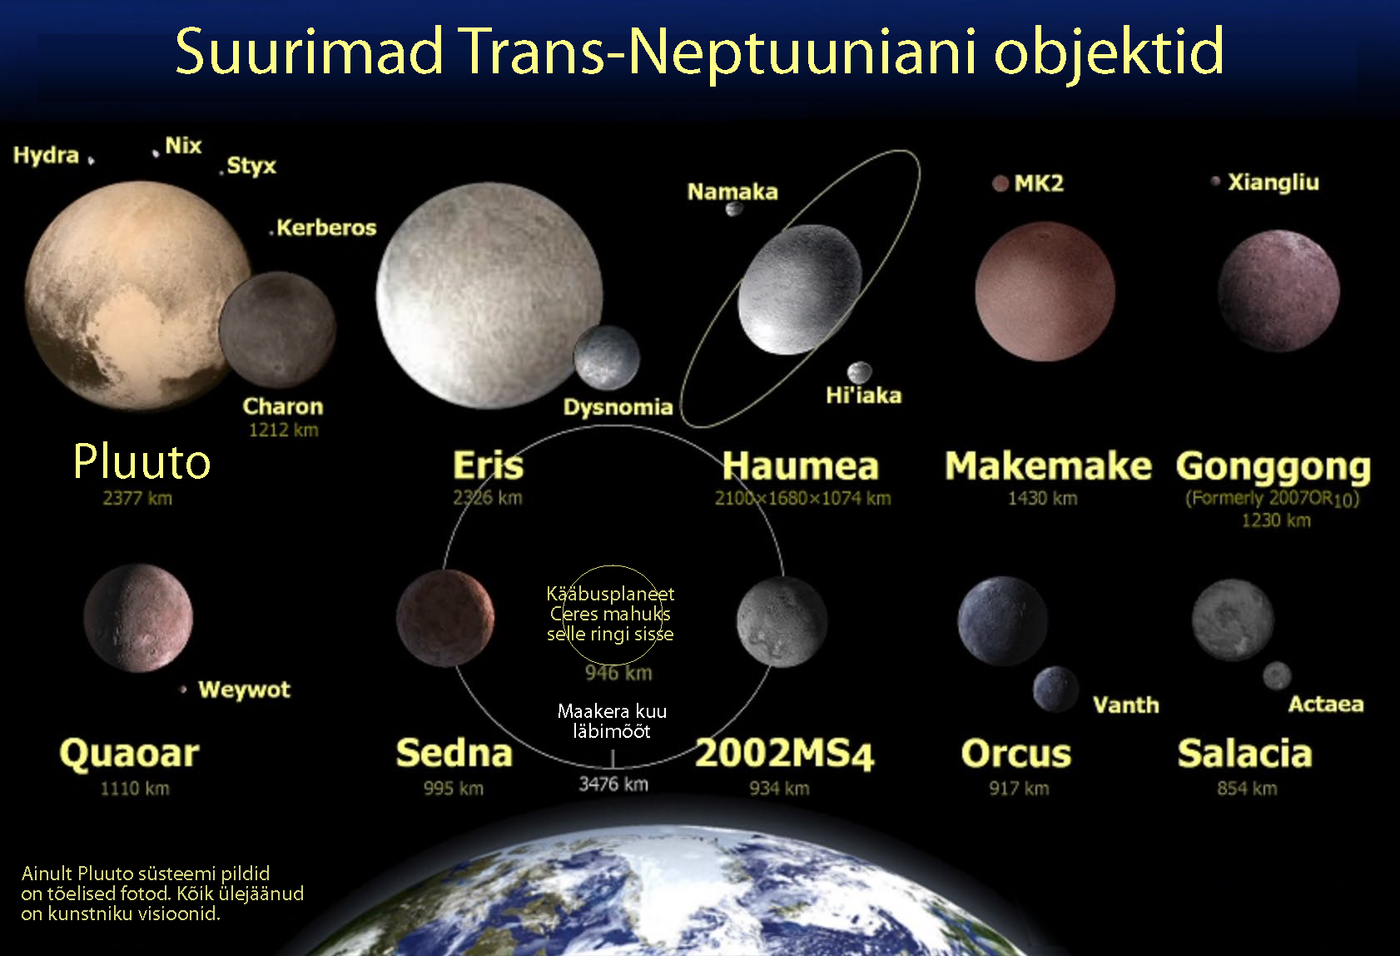 Suurimate teadaolevate Neptuuni-taguste objektide mõõtmed võrrelduna Maaga